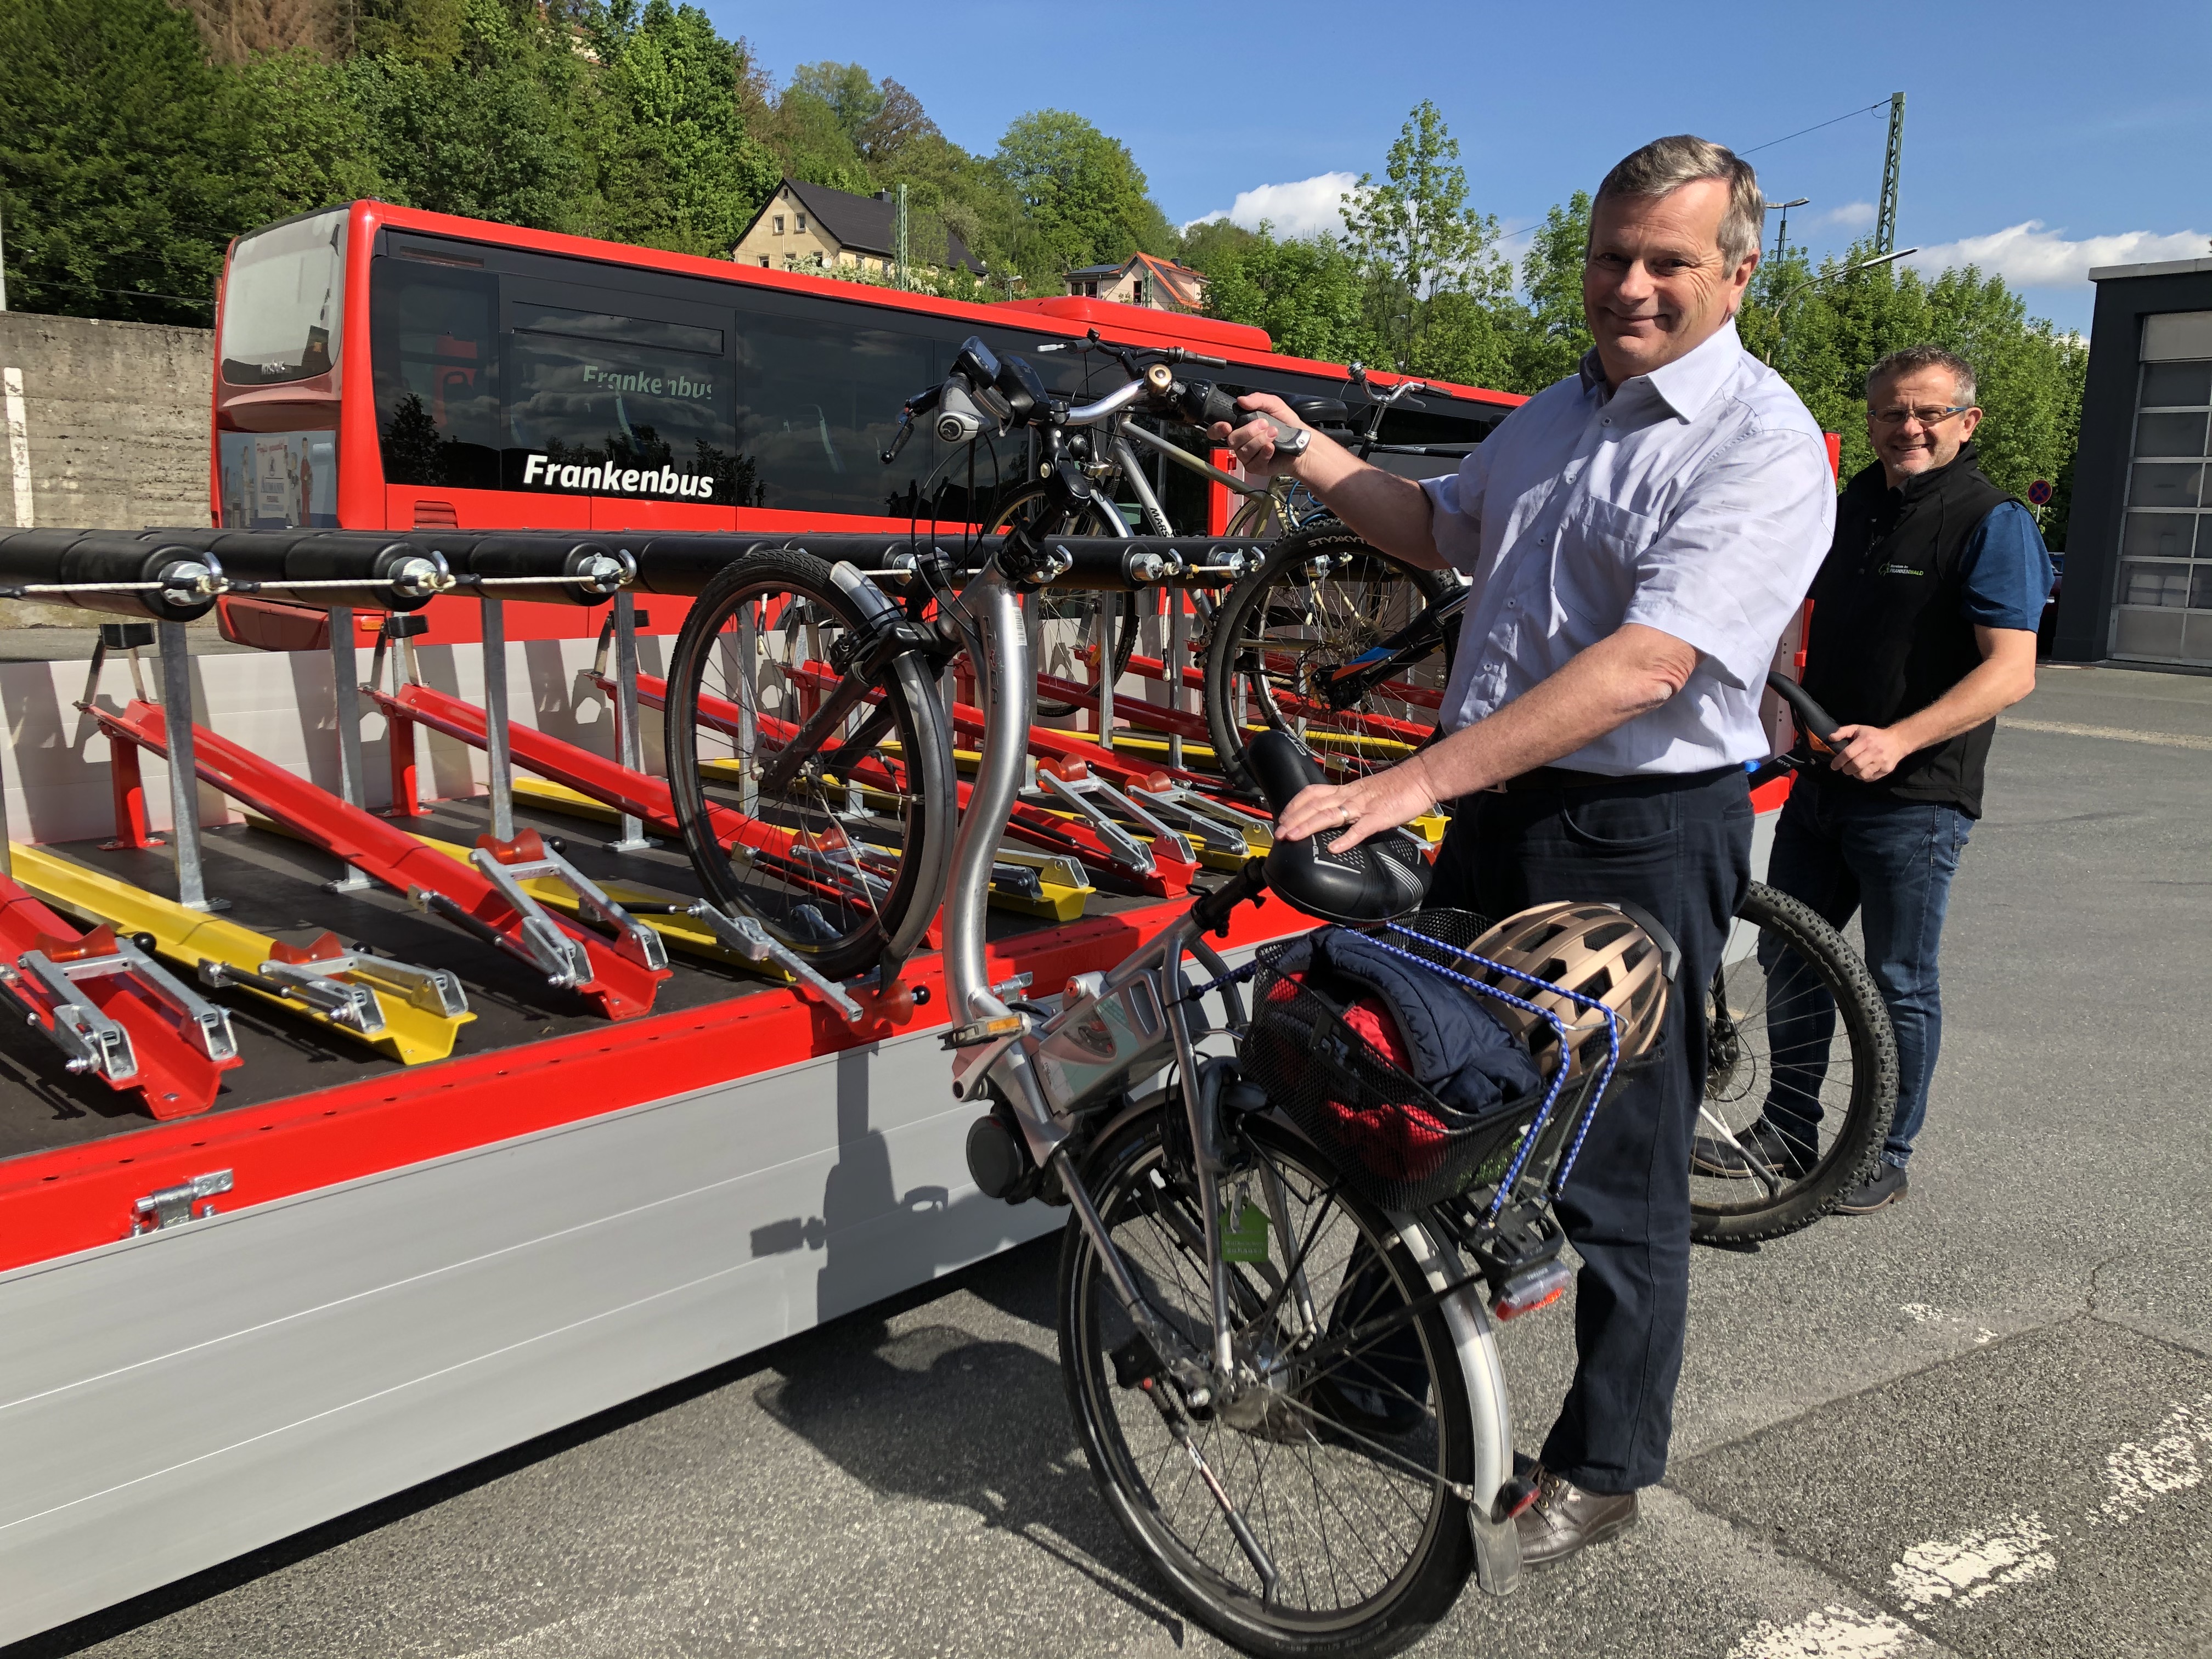 3Fmobil – Fahrrad- und Freizeitbusse im Frankenwald, Fichtelgebirge und Fränkischen Schweiz